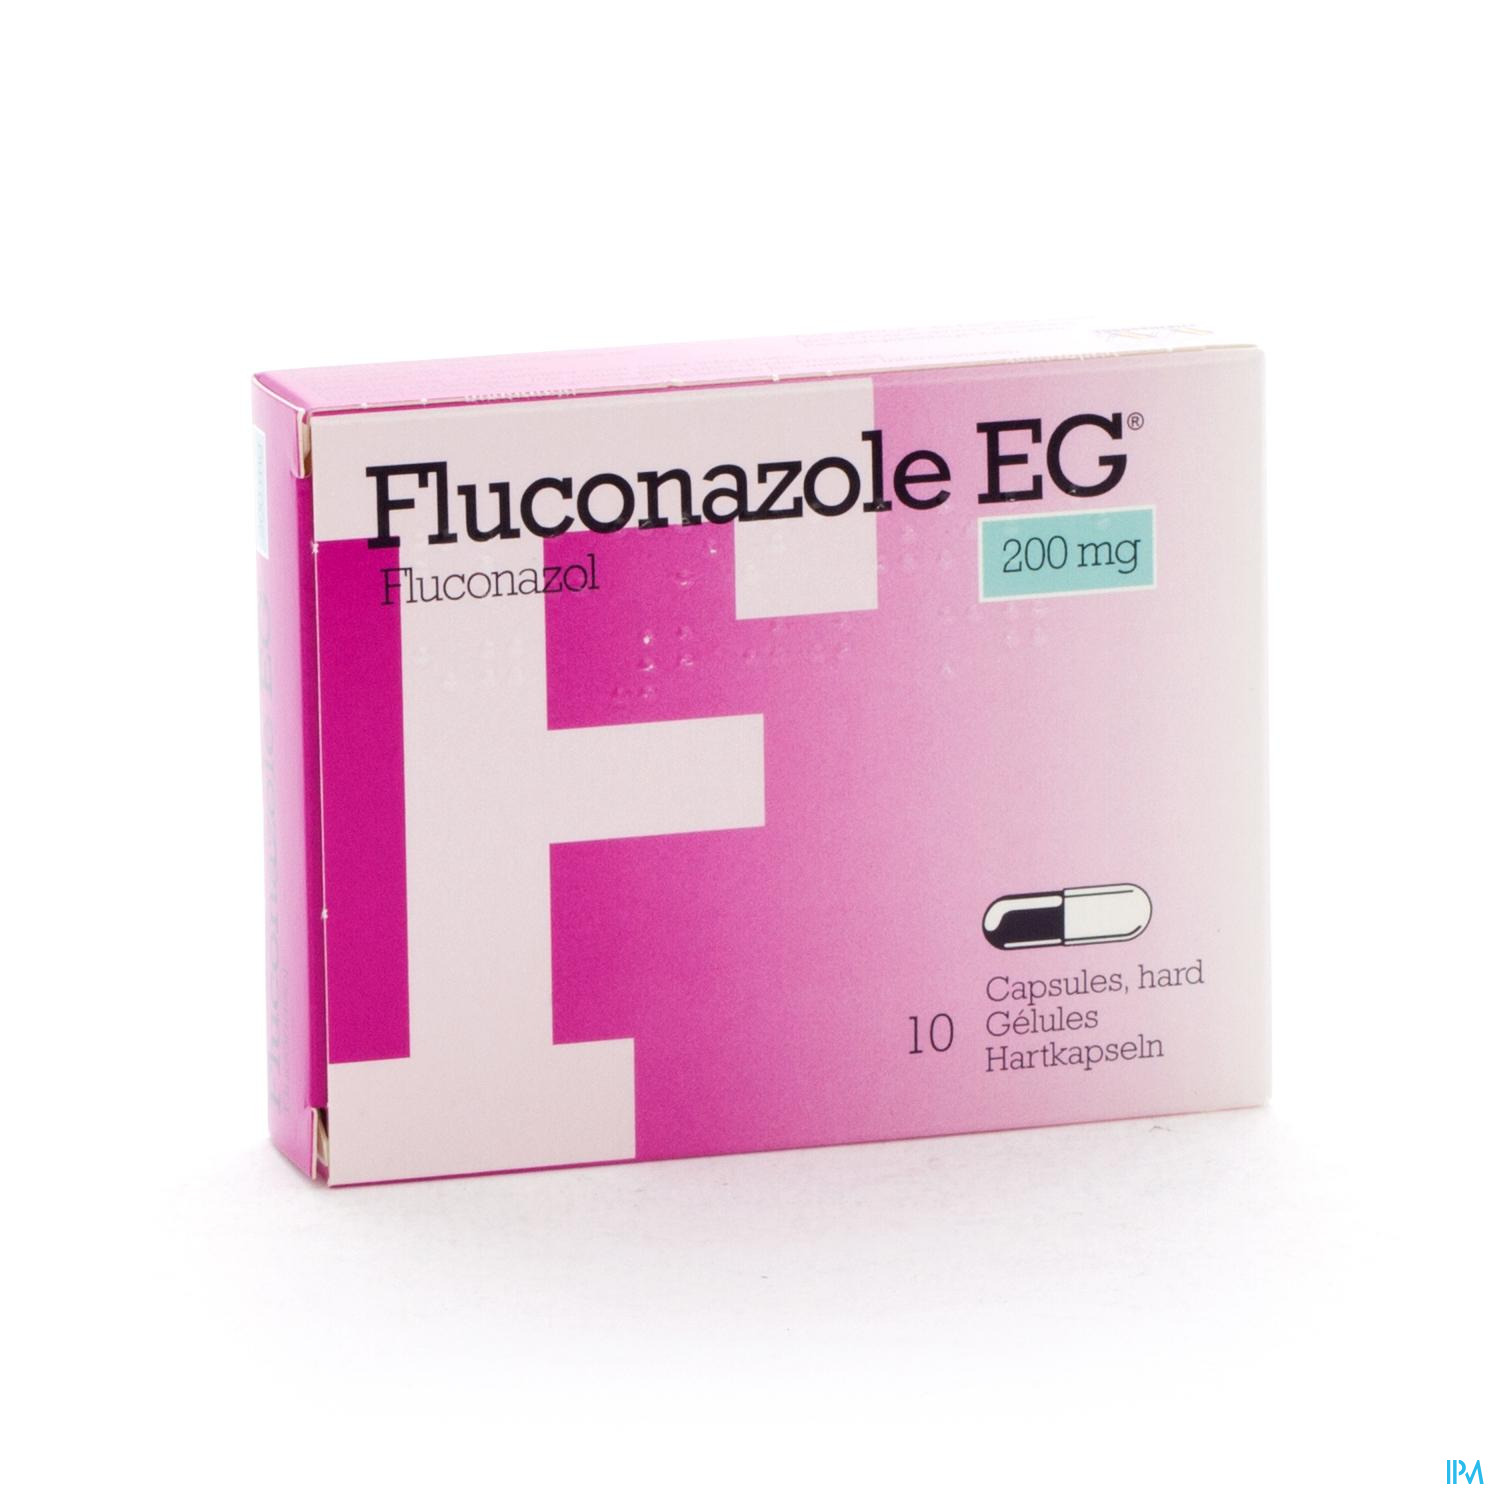 Fluconazol EG 200 mg Caps 10